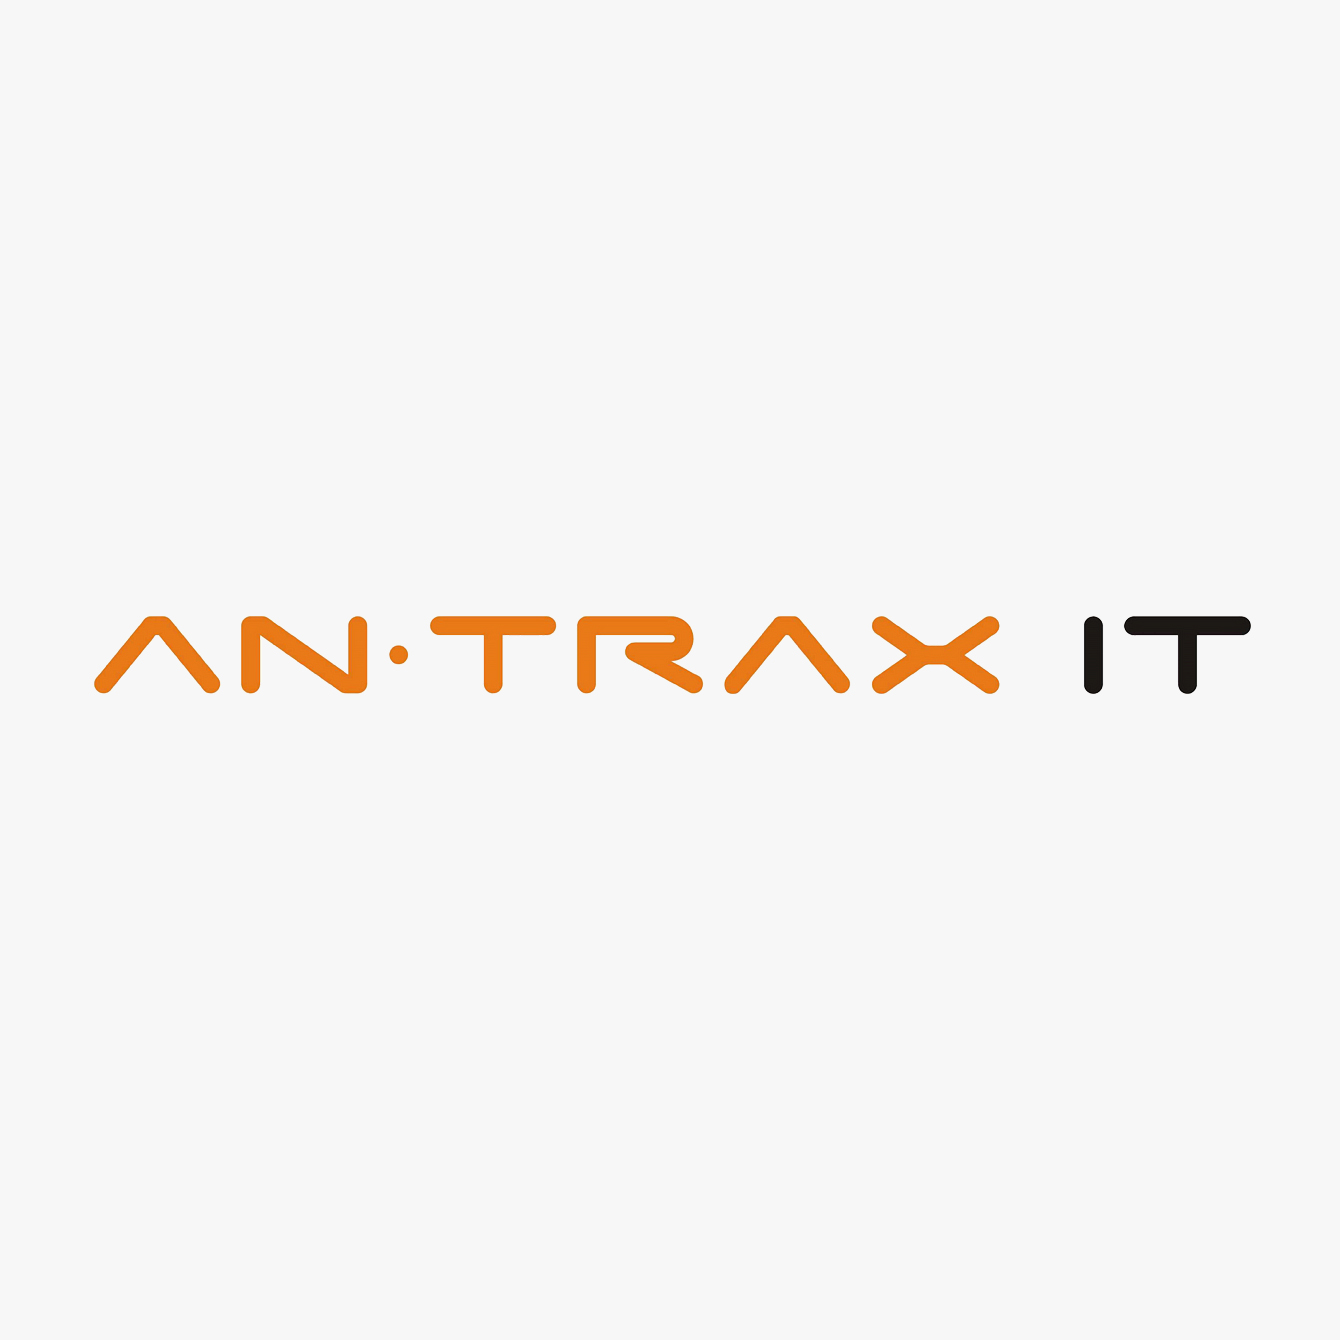 Tavola Specchio - Ultraflaches ANTRAX IT Heizpaneel (mit Spiegel/550mm) von Andrea Crosetta | Radiamo